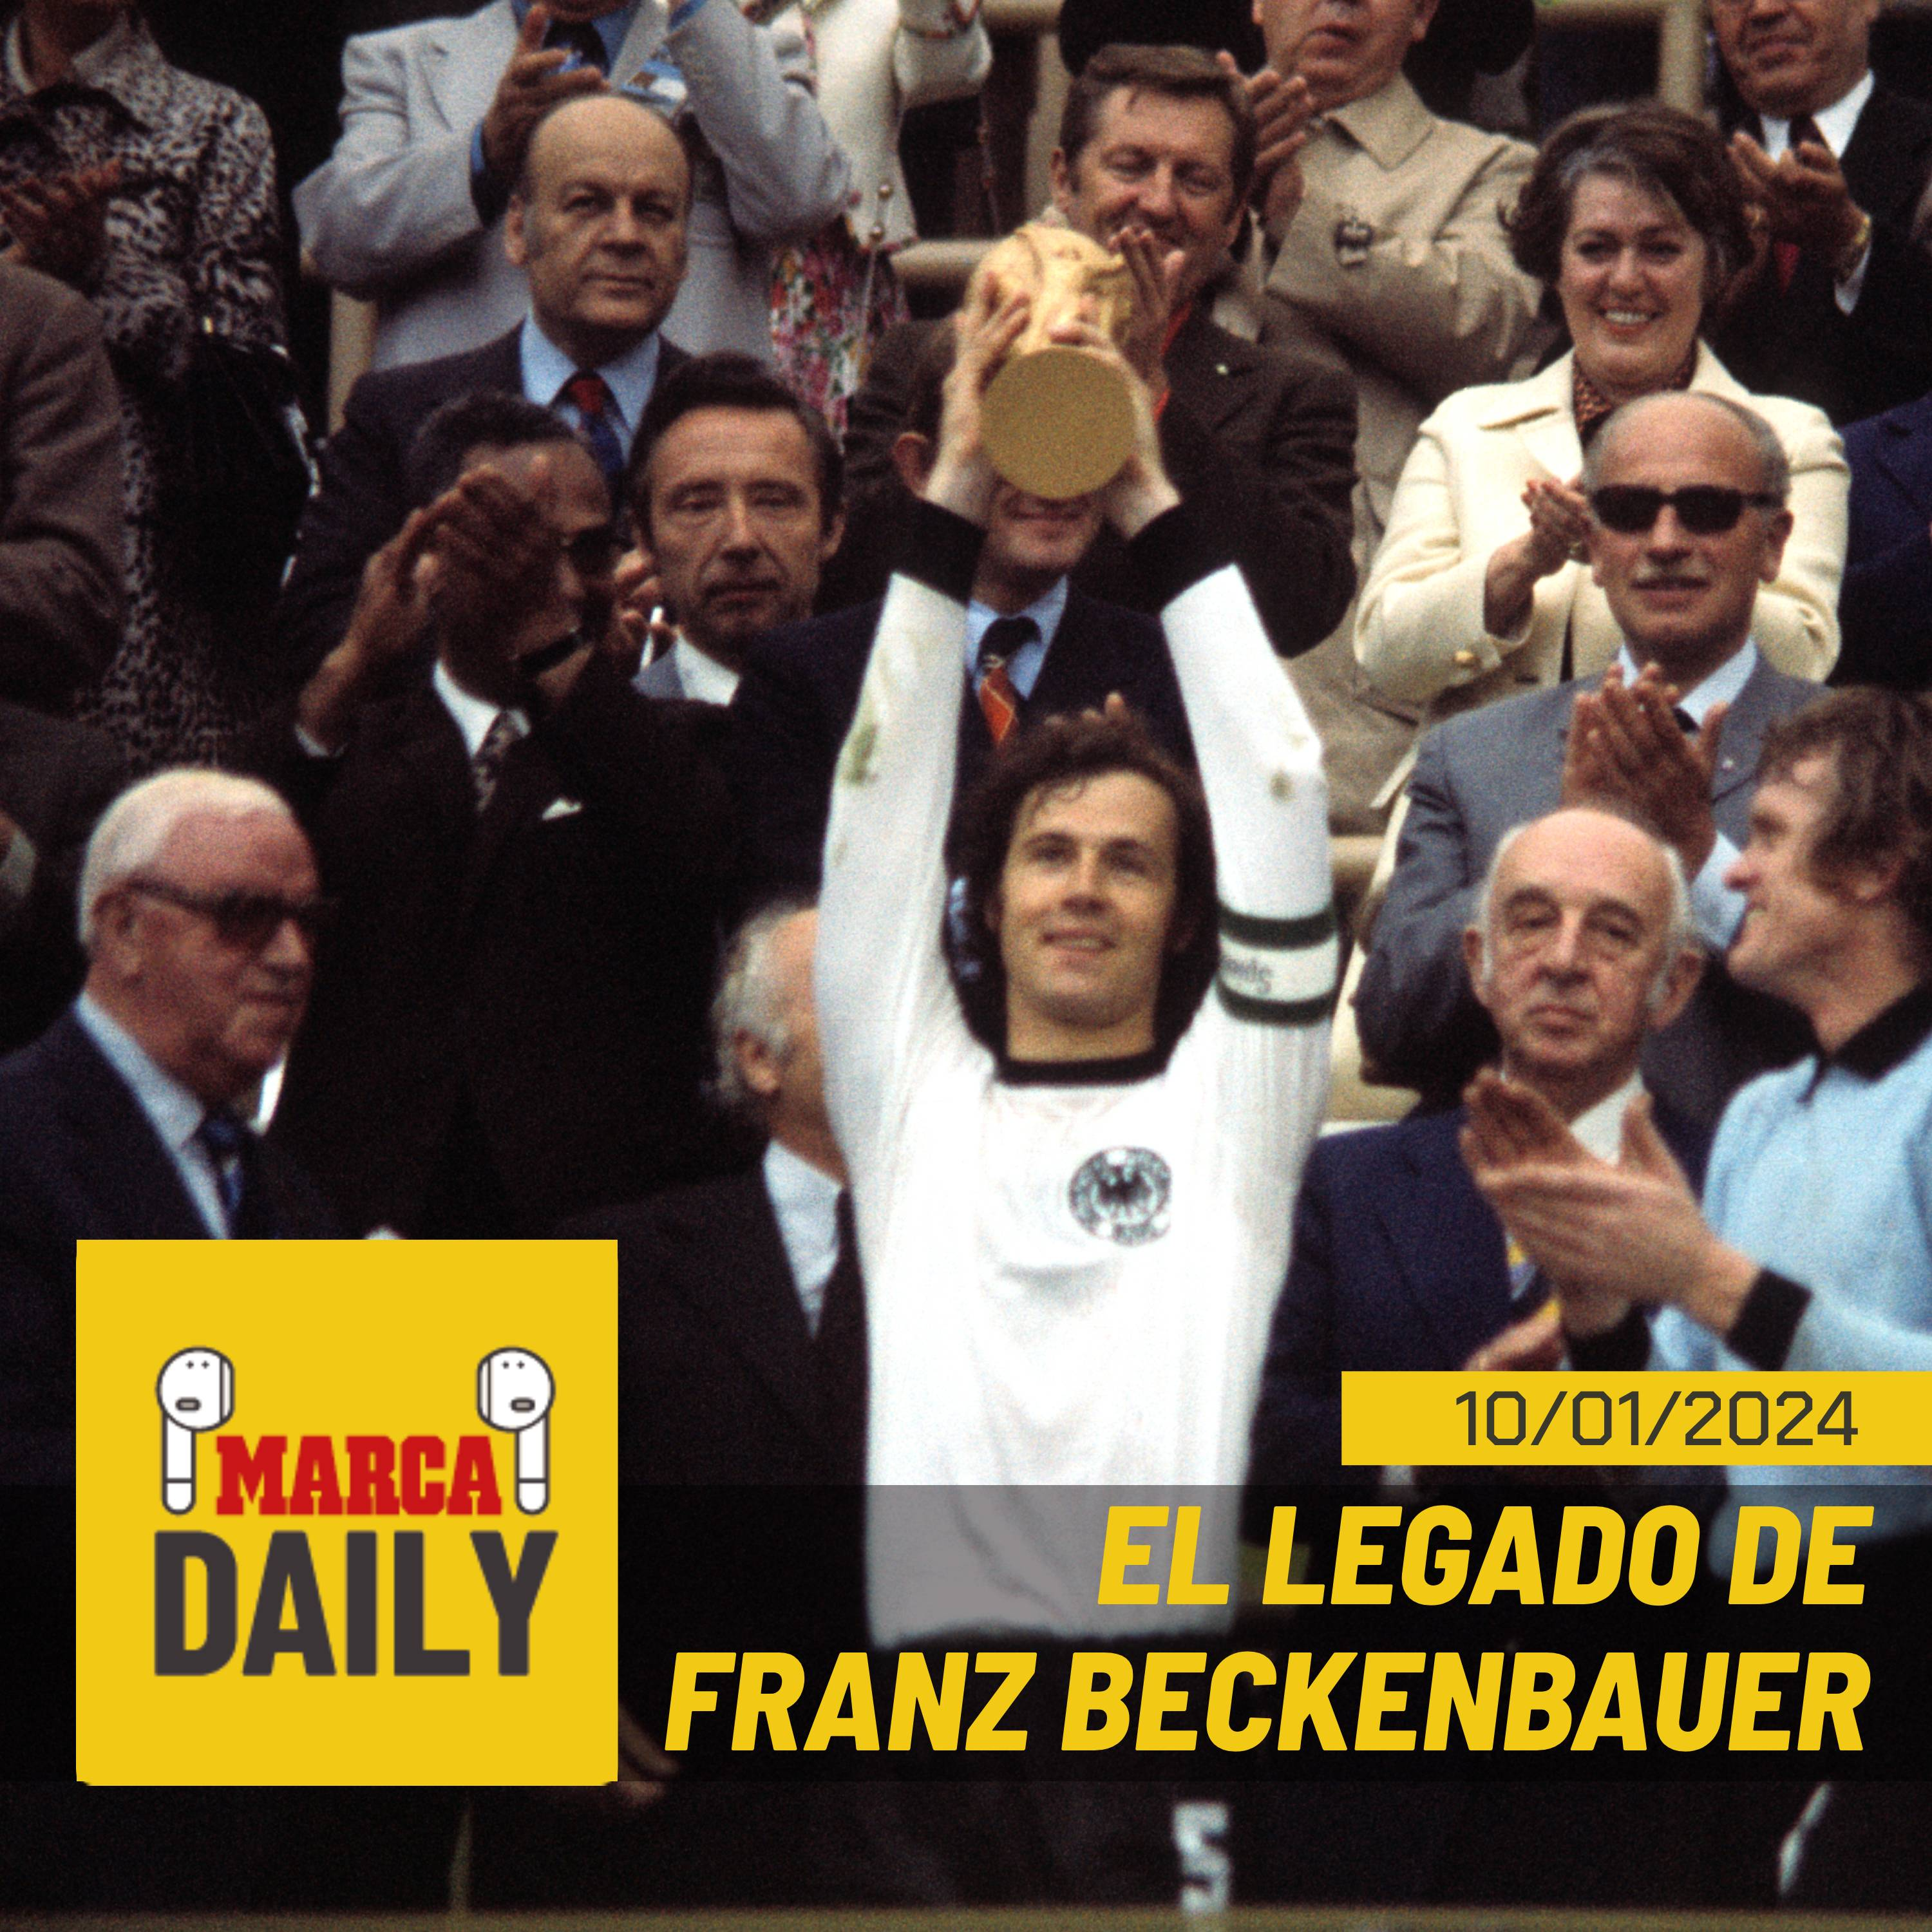 El legado de Franz Beckenbauer